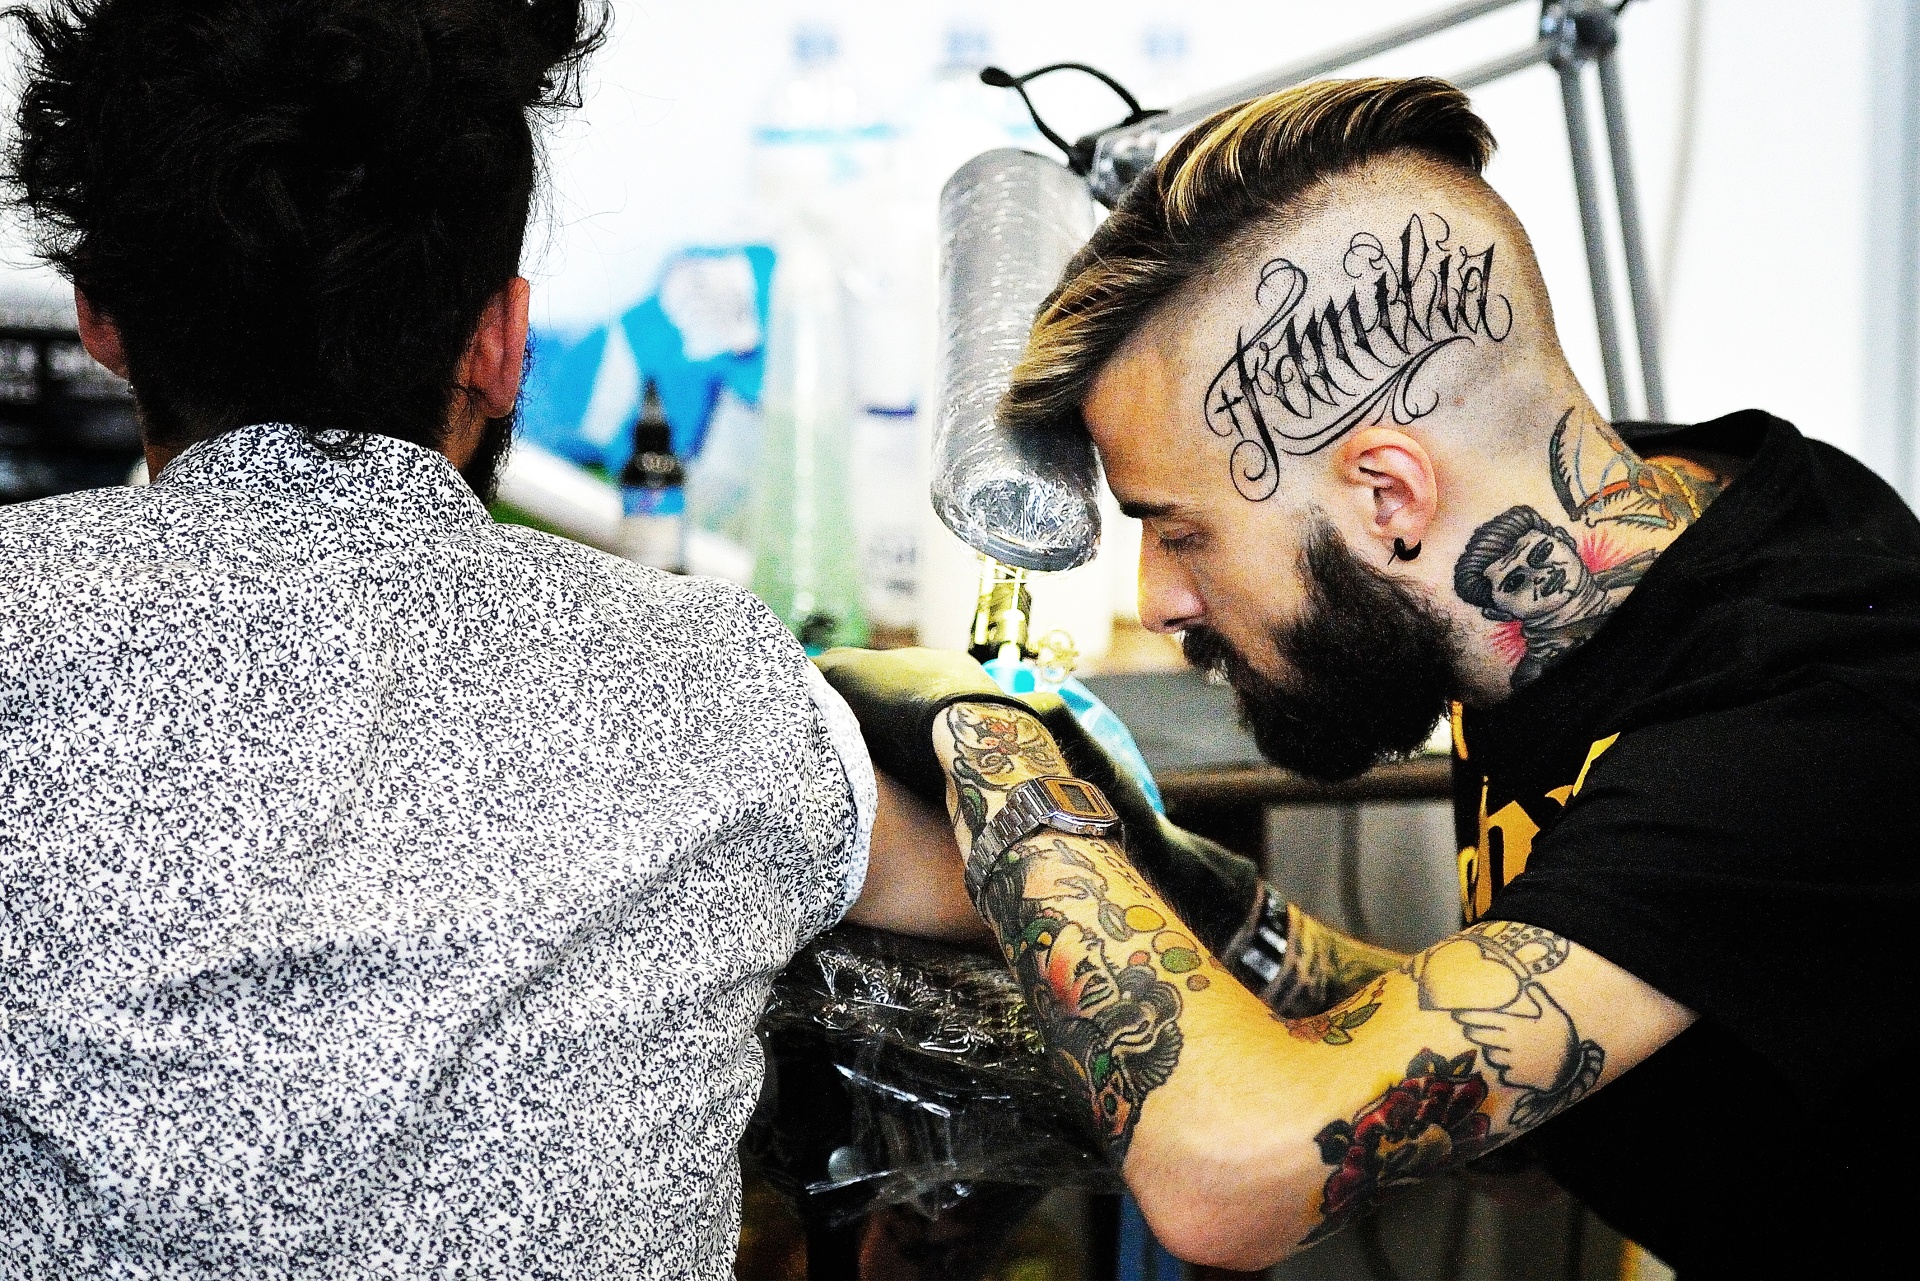 Artisti di pelle, Il 13-14-15 giugno 2014, nei locali dell'Expo Fiere di La Spezia (Italy), si è svolta la kermesse dedicata al tatuaggio. Centocinquanta artisti tra i più affermati in Italia, hanno